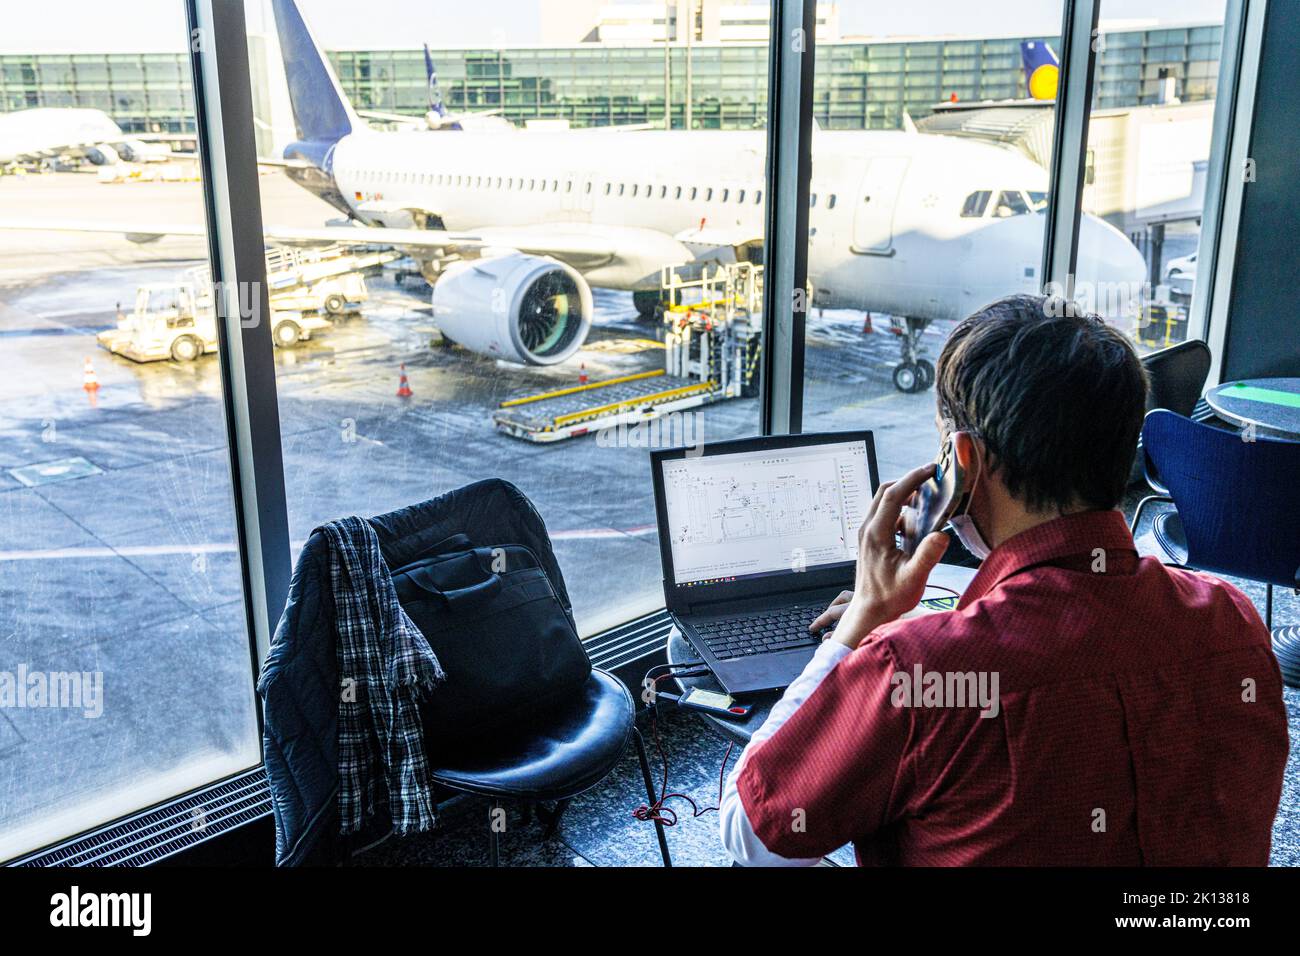 Vista posteriore di un uomo maturo che utilizza un computer portatile e uno smartphone mentre attende in aeroporto, Norvegia, Scandinavia, Europa Foto Stock